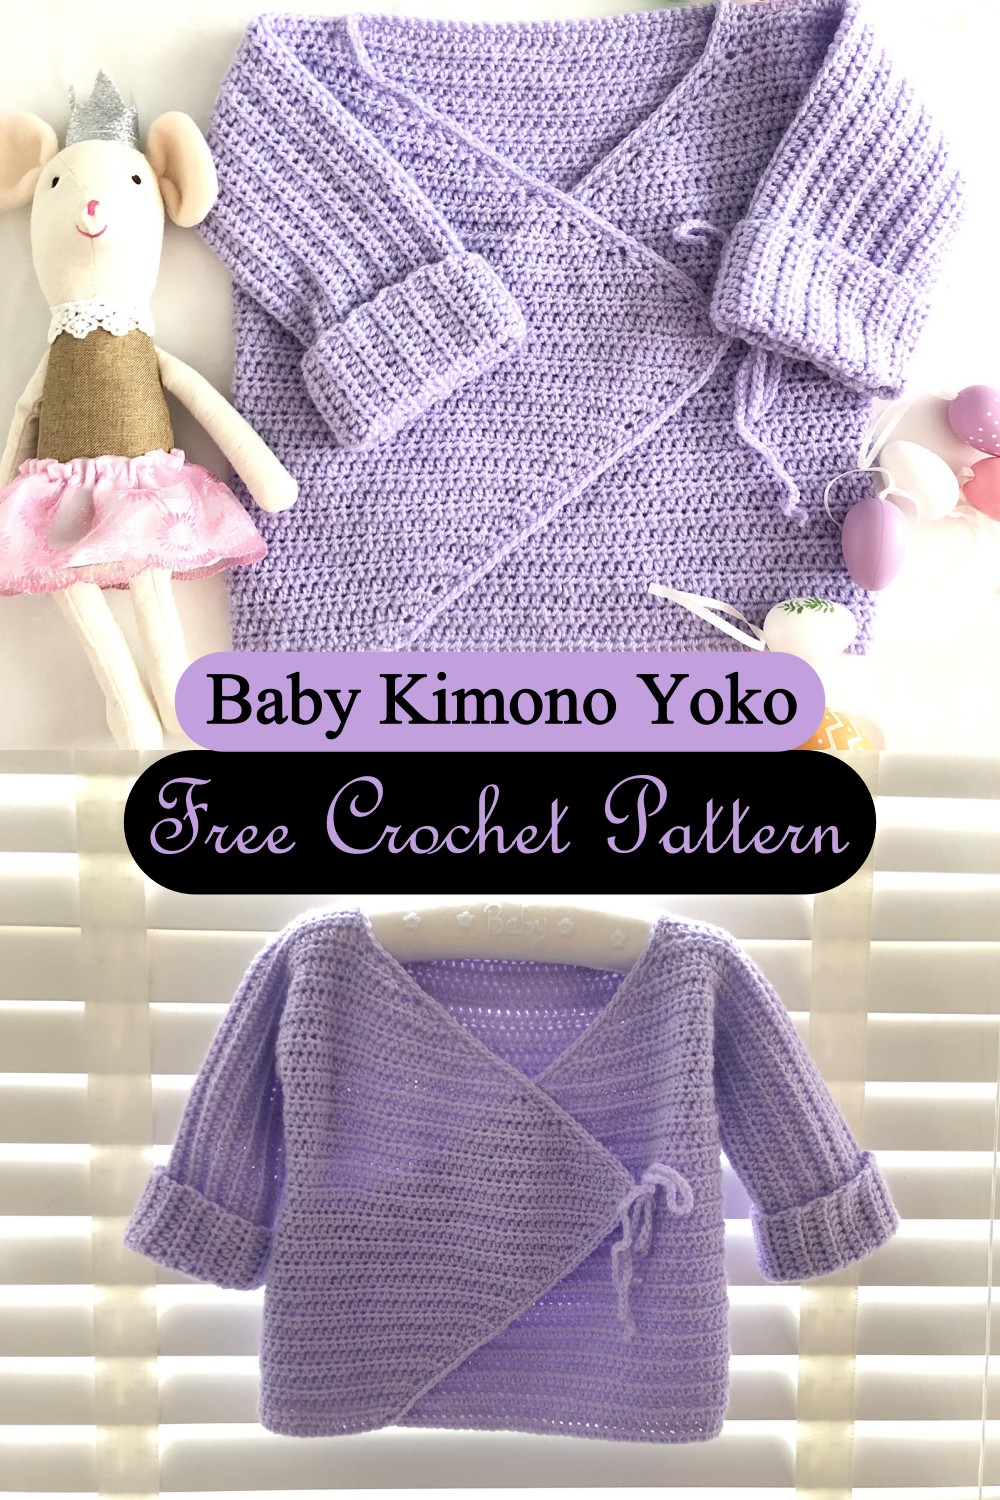 Baby Kimono Yoko